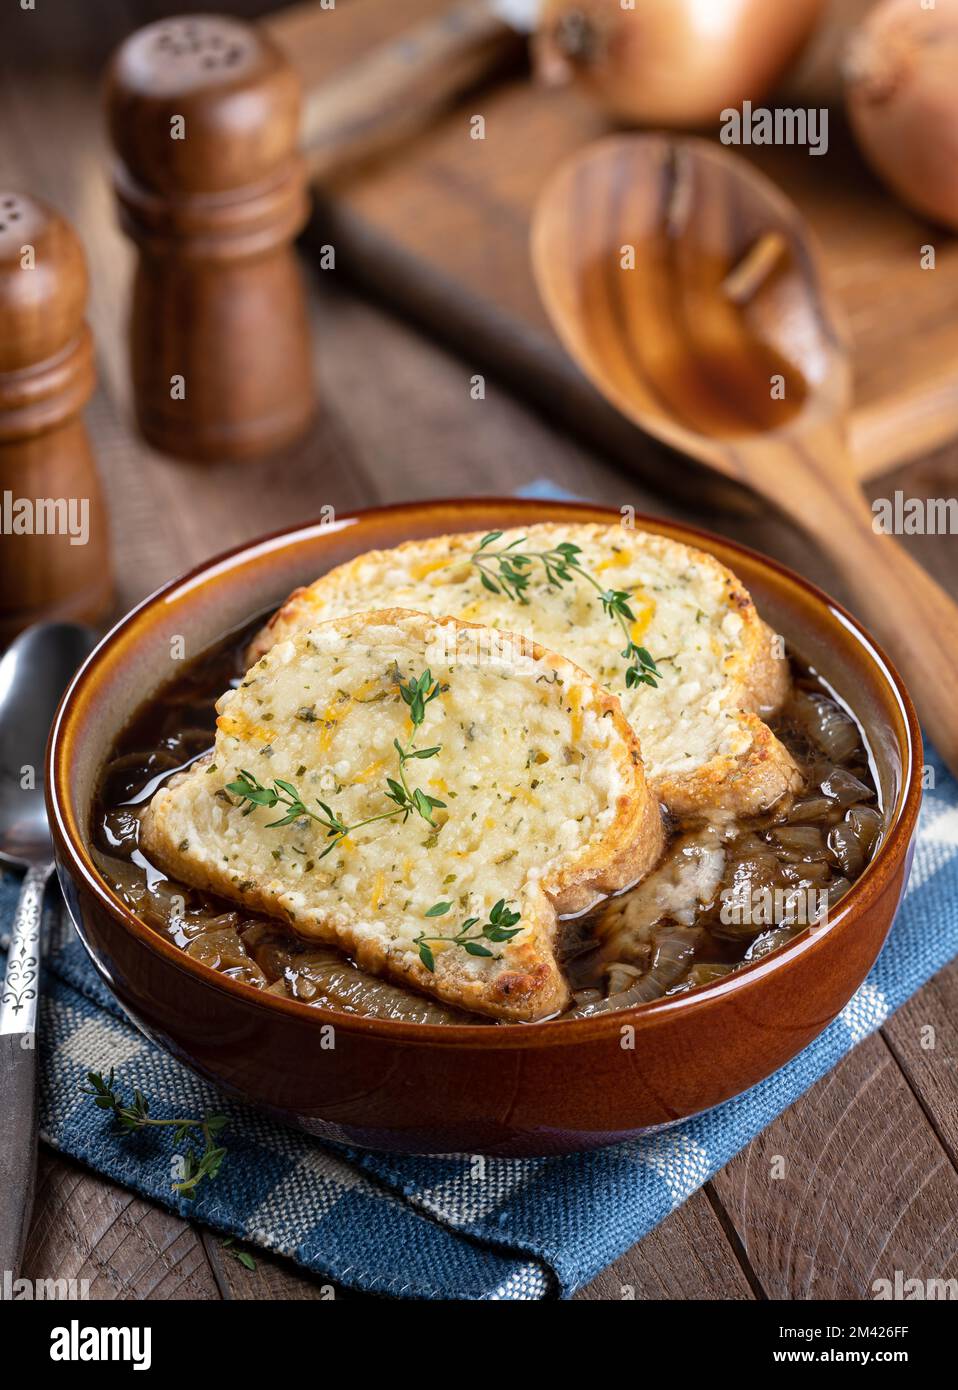 Soupe à l'oignon français avec baguette au fromage grillé garnie de thym sur fond rustique de table en bois Banque D'Images